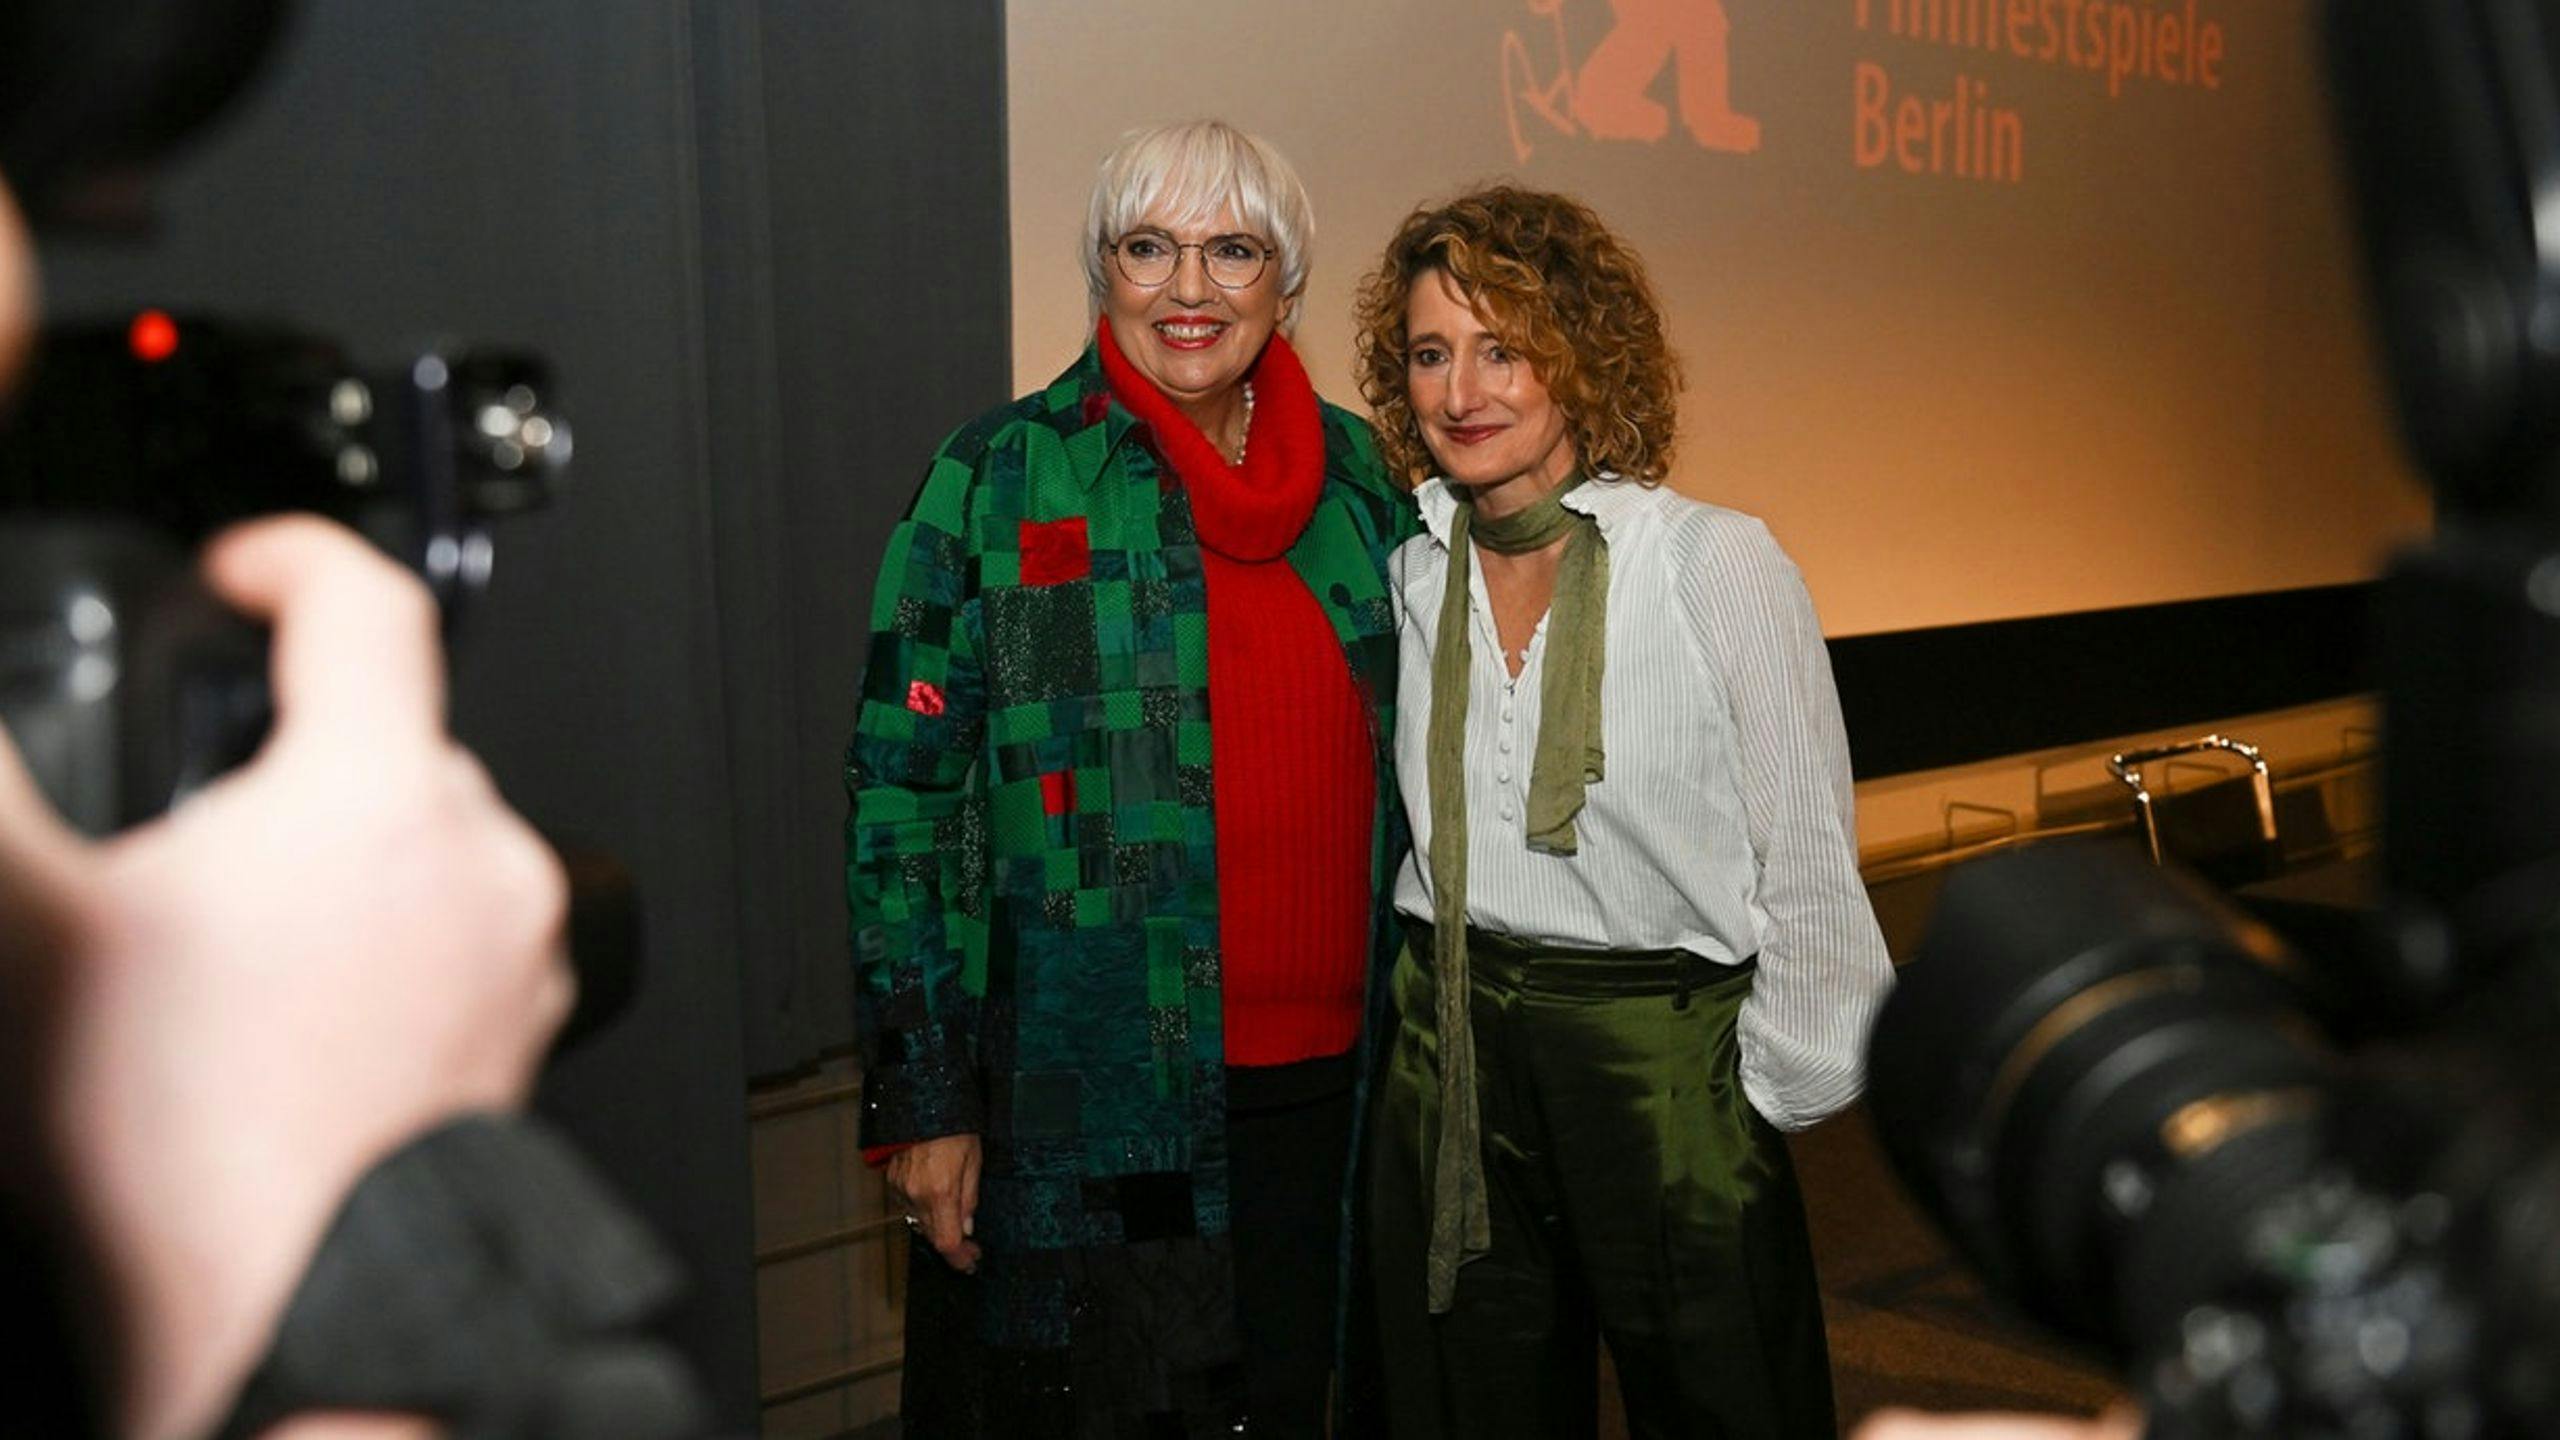 La nueva directora de la Berlinale, Tricia Tuttle, posa con la ministra de Cultura Claudia Roth tras su presentación